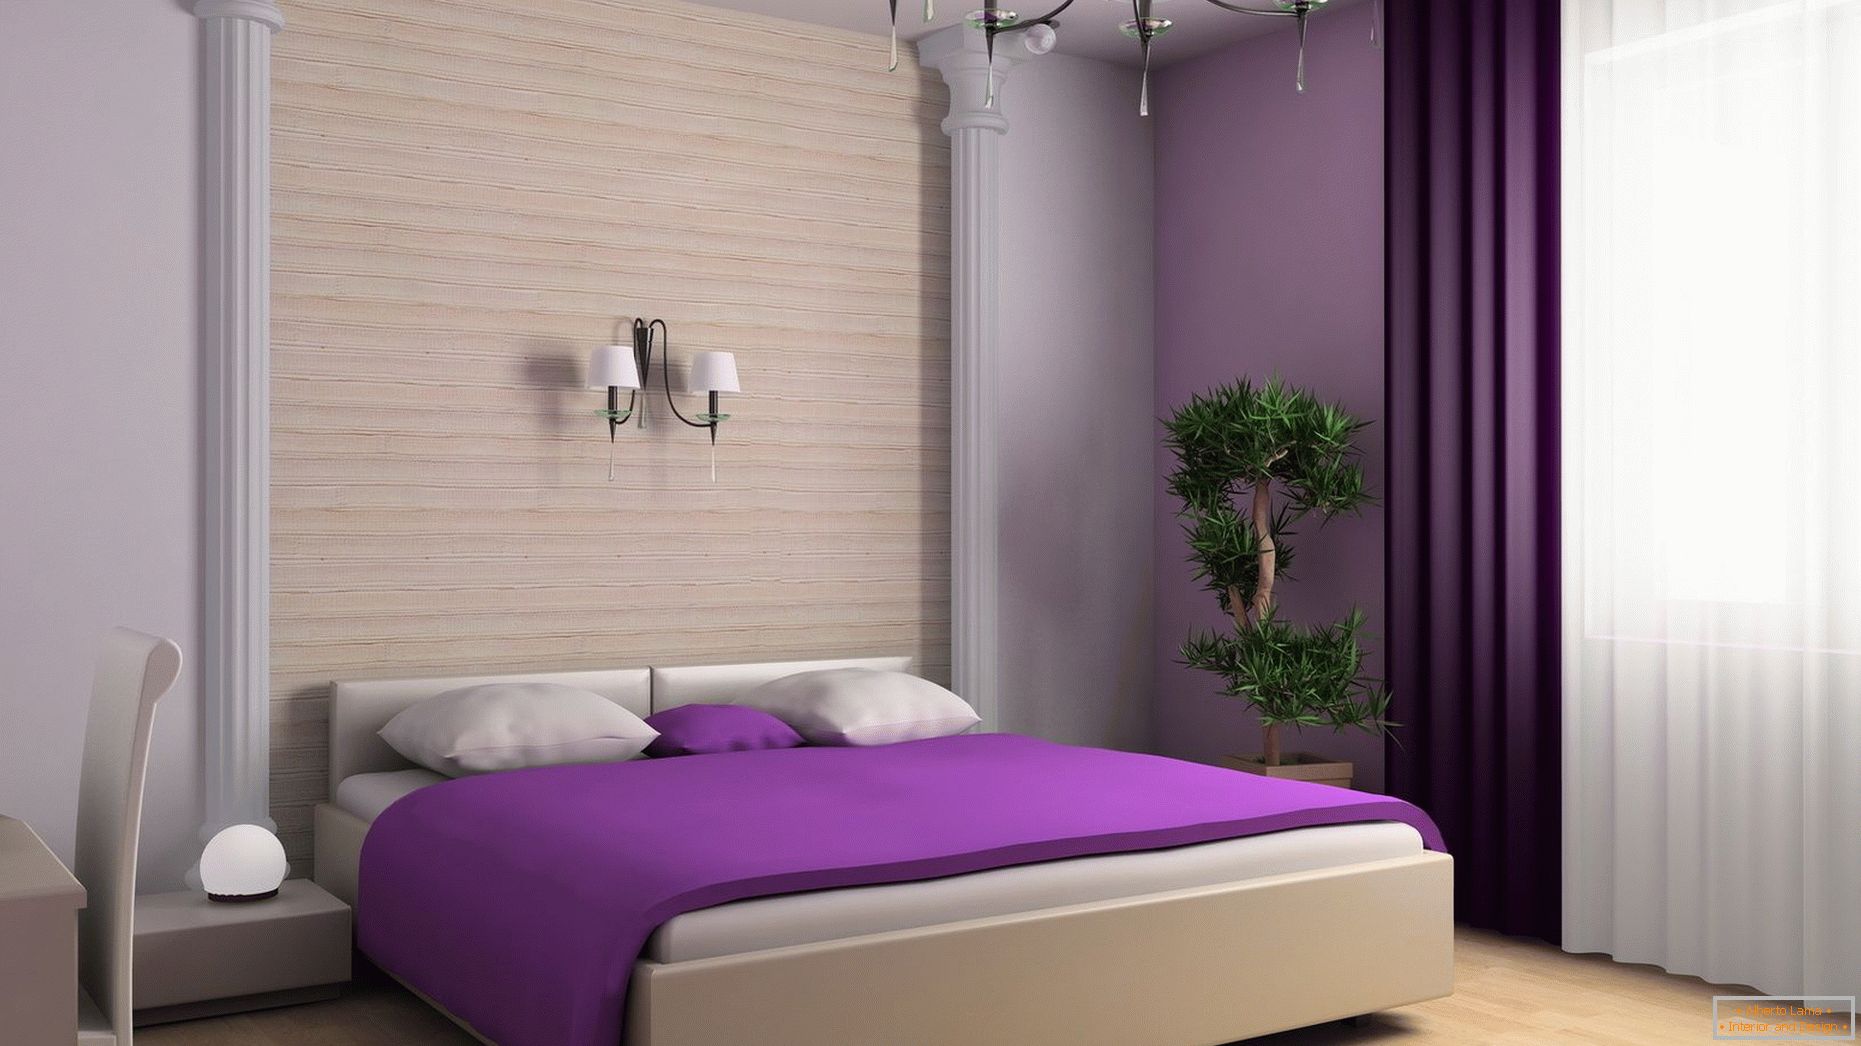 Cobertor violeta na cama